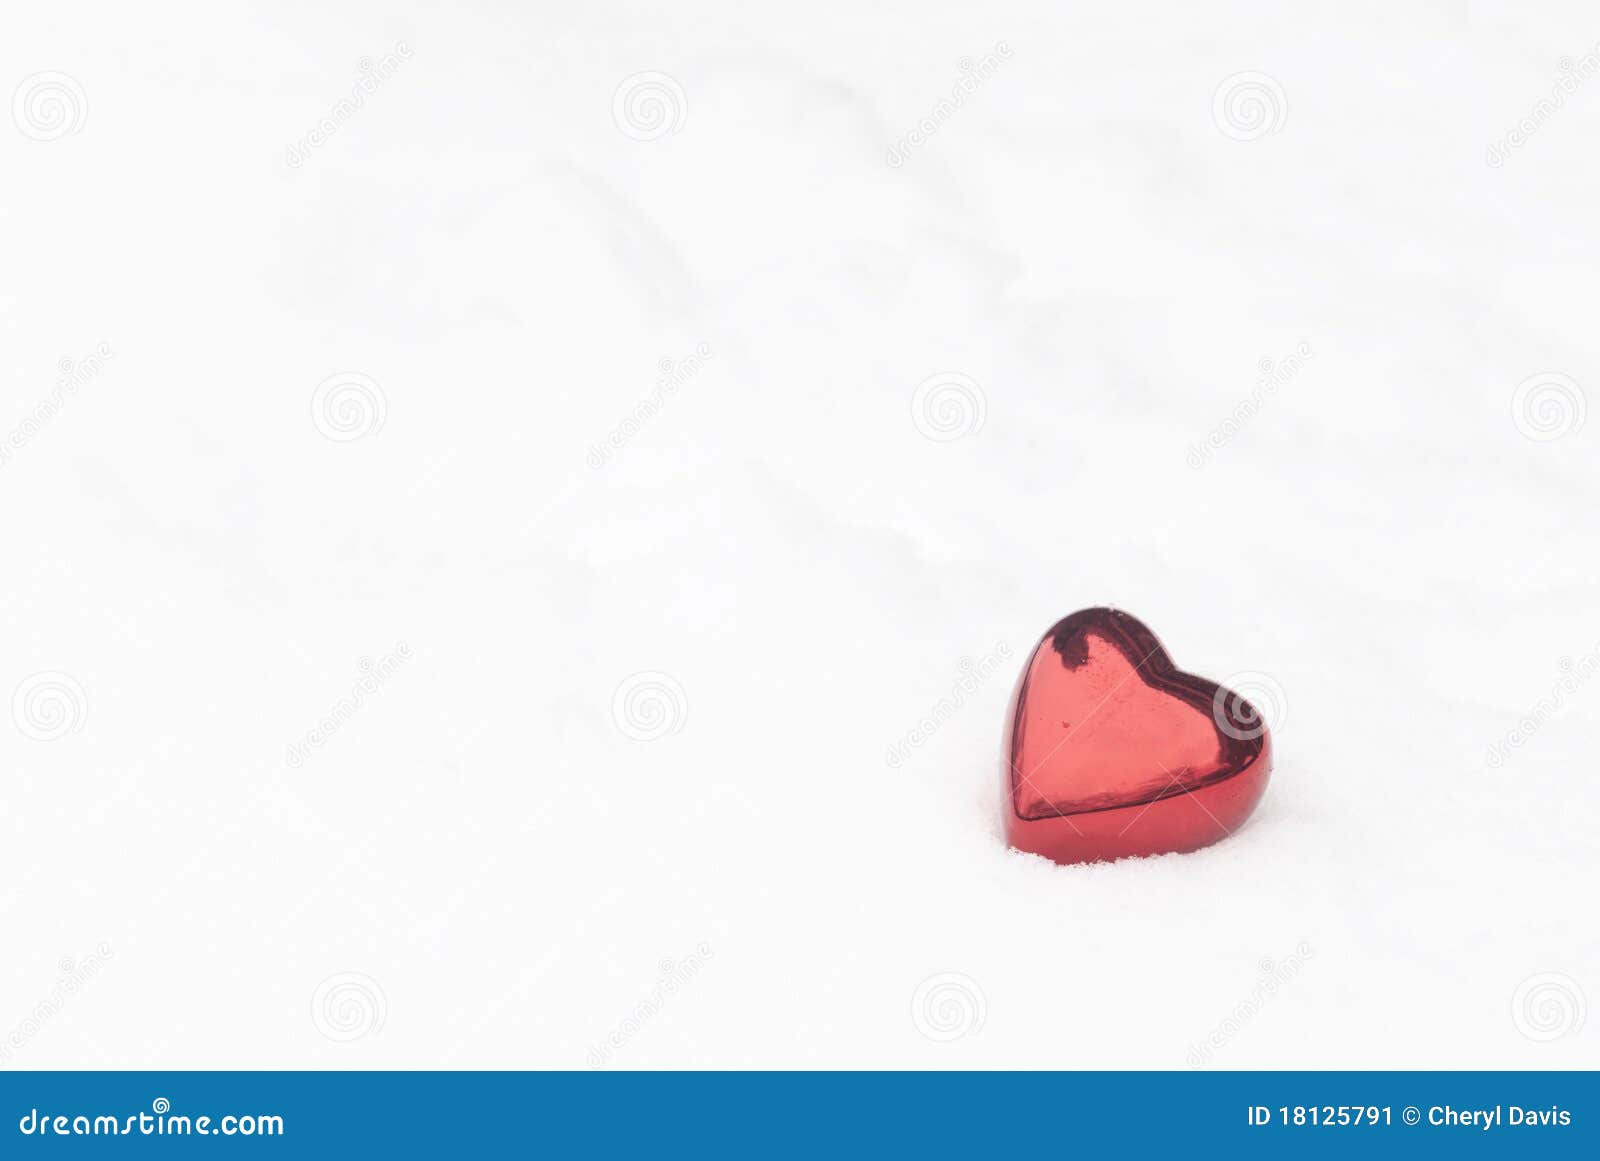 Het Hart van valentijnskaarten in de Sneeuw. Een rood glanzend hart van Valentijnskaarten in de sneeuw met veel exemplaarruimte